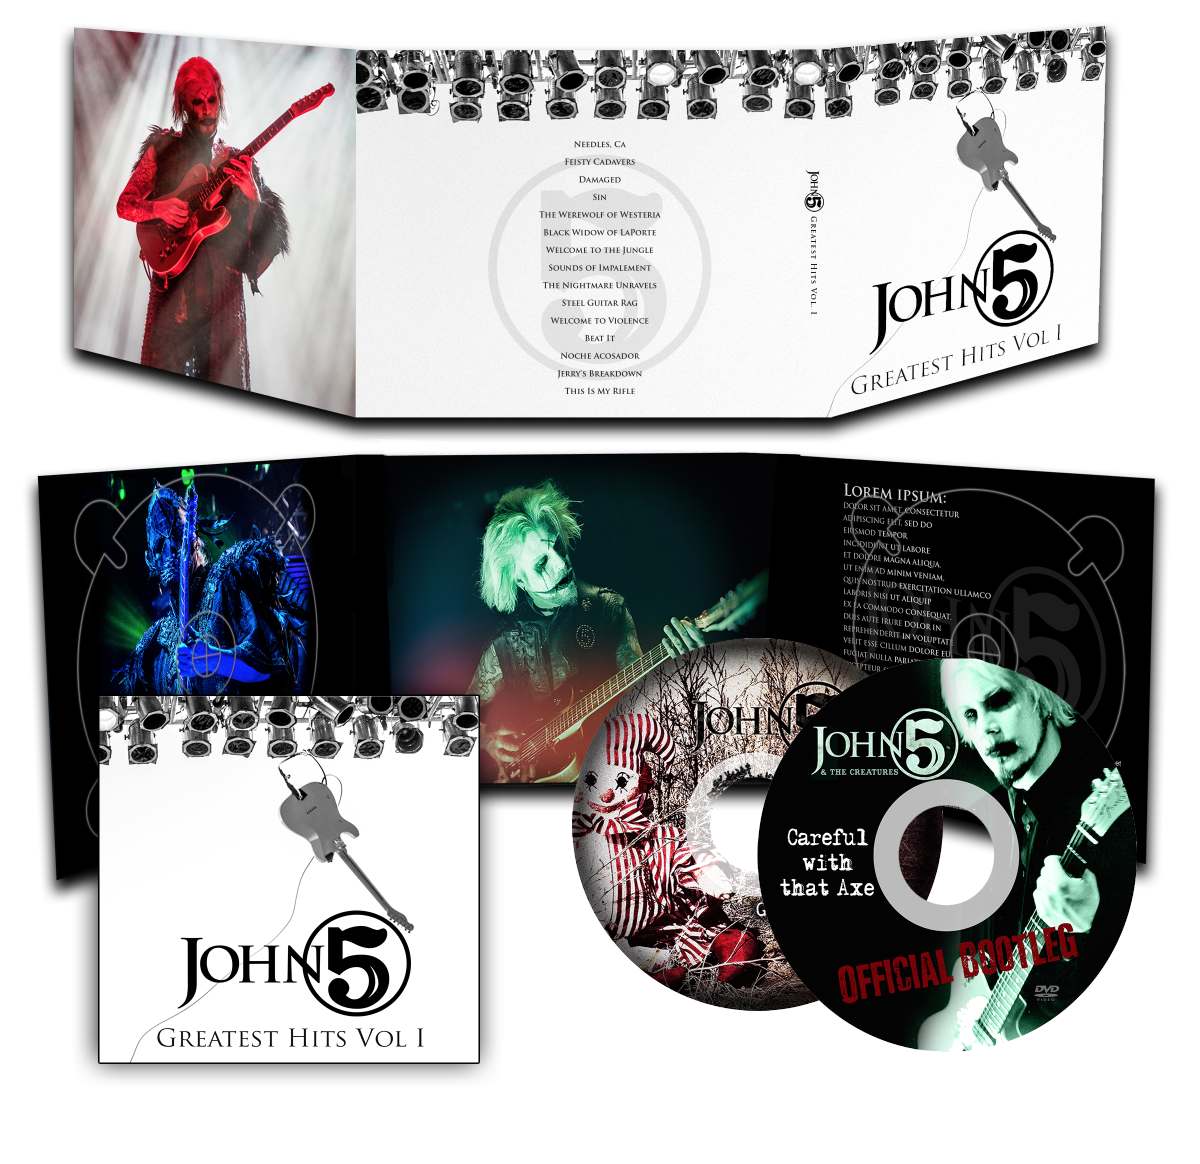 John 'Greatest Hits Vol ' CD + John 5 Store